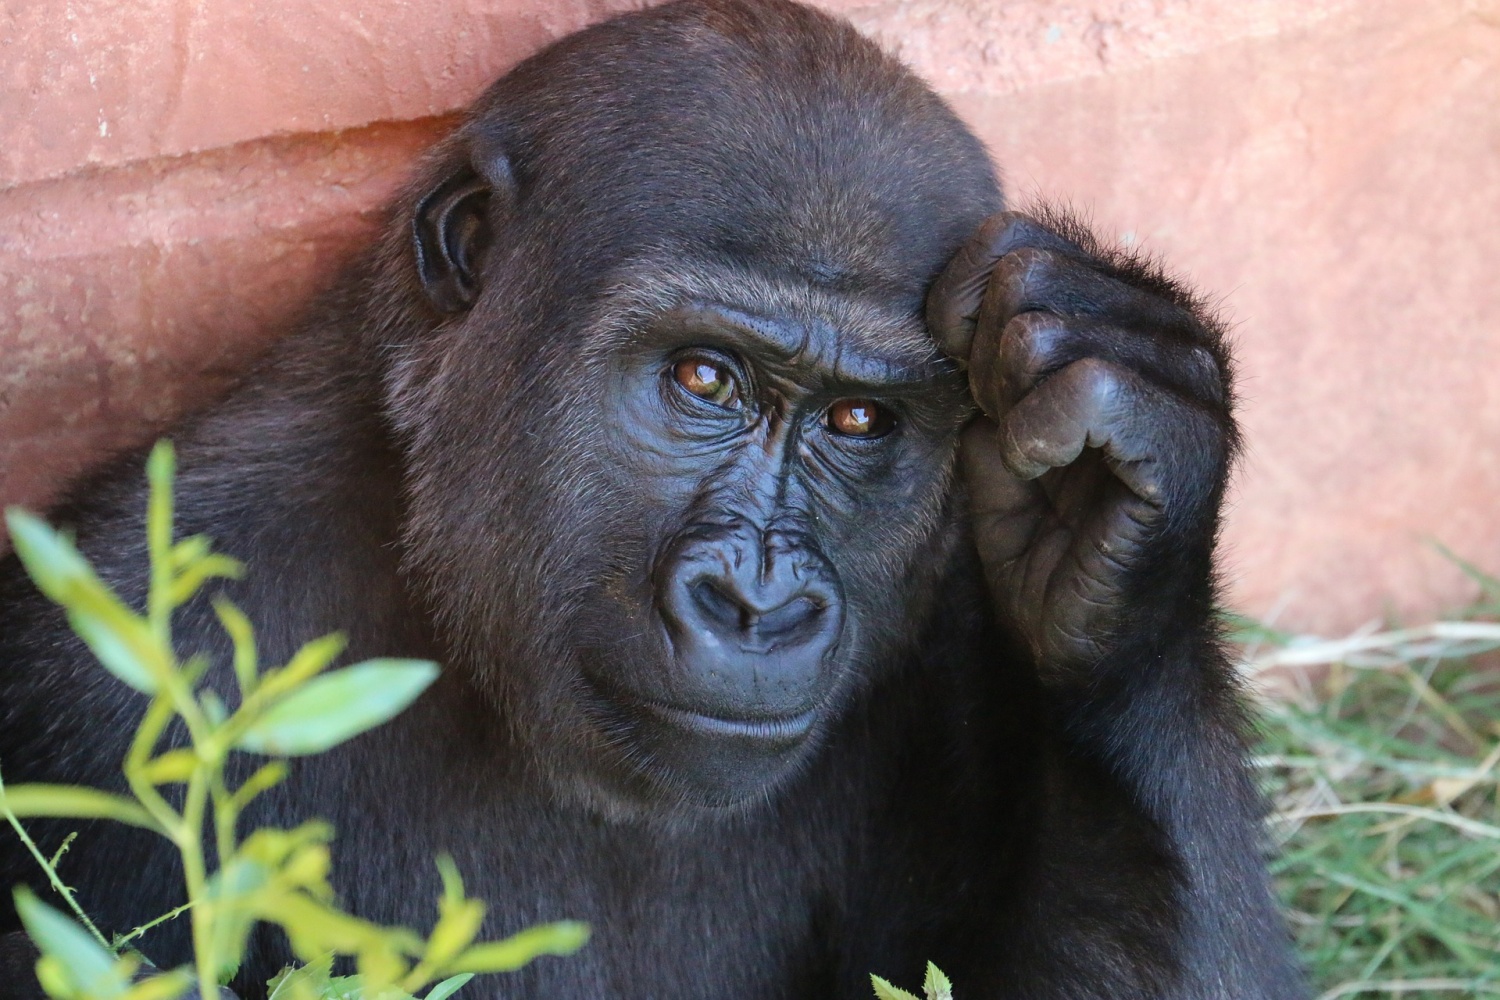 Orphaned gorillas selfie with park ranger